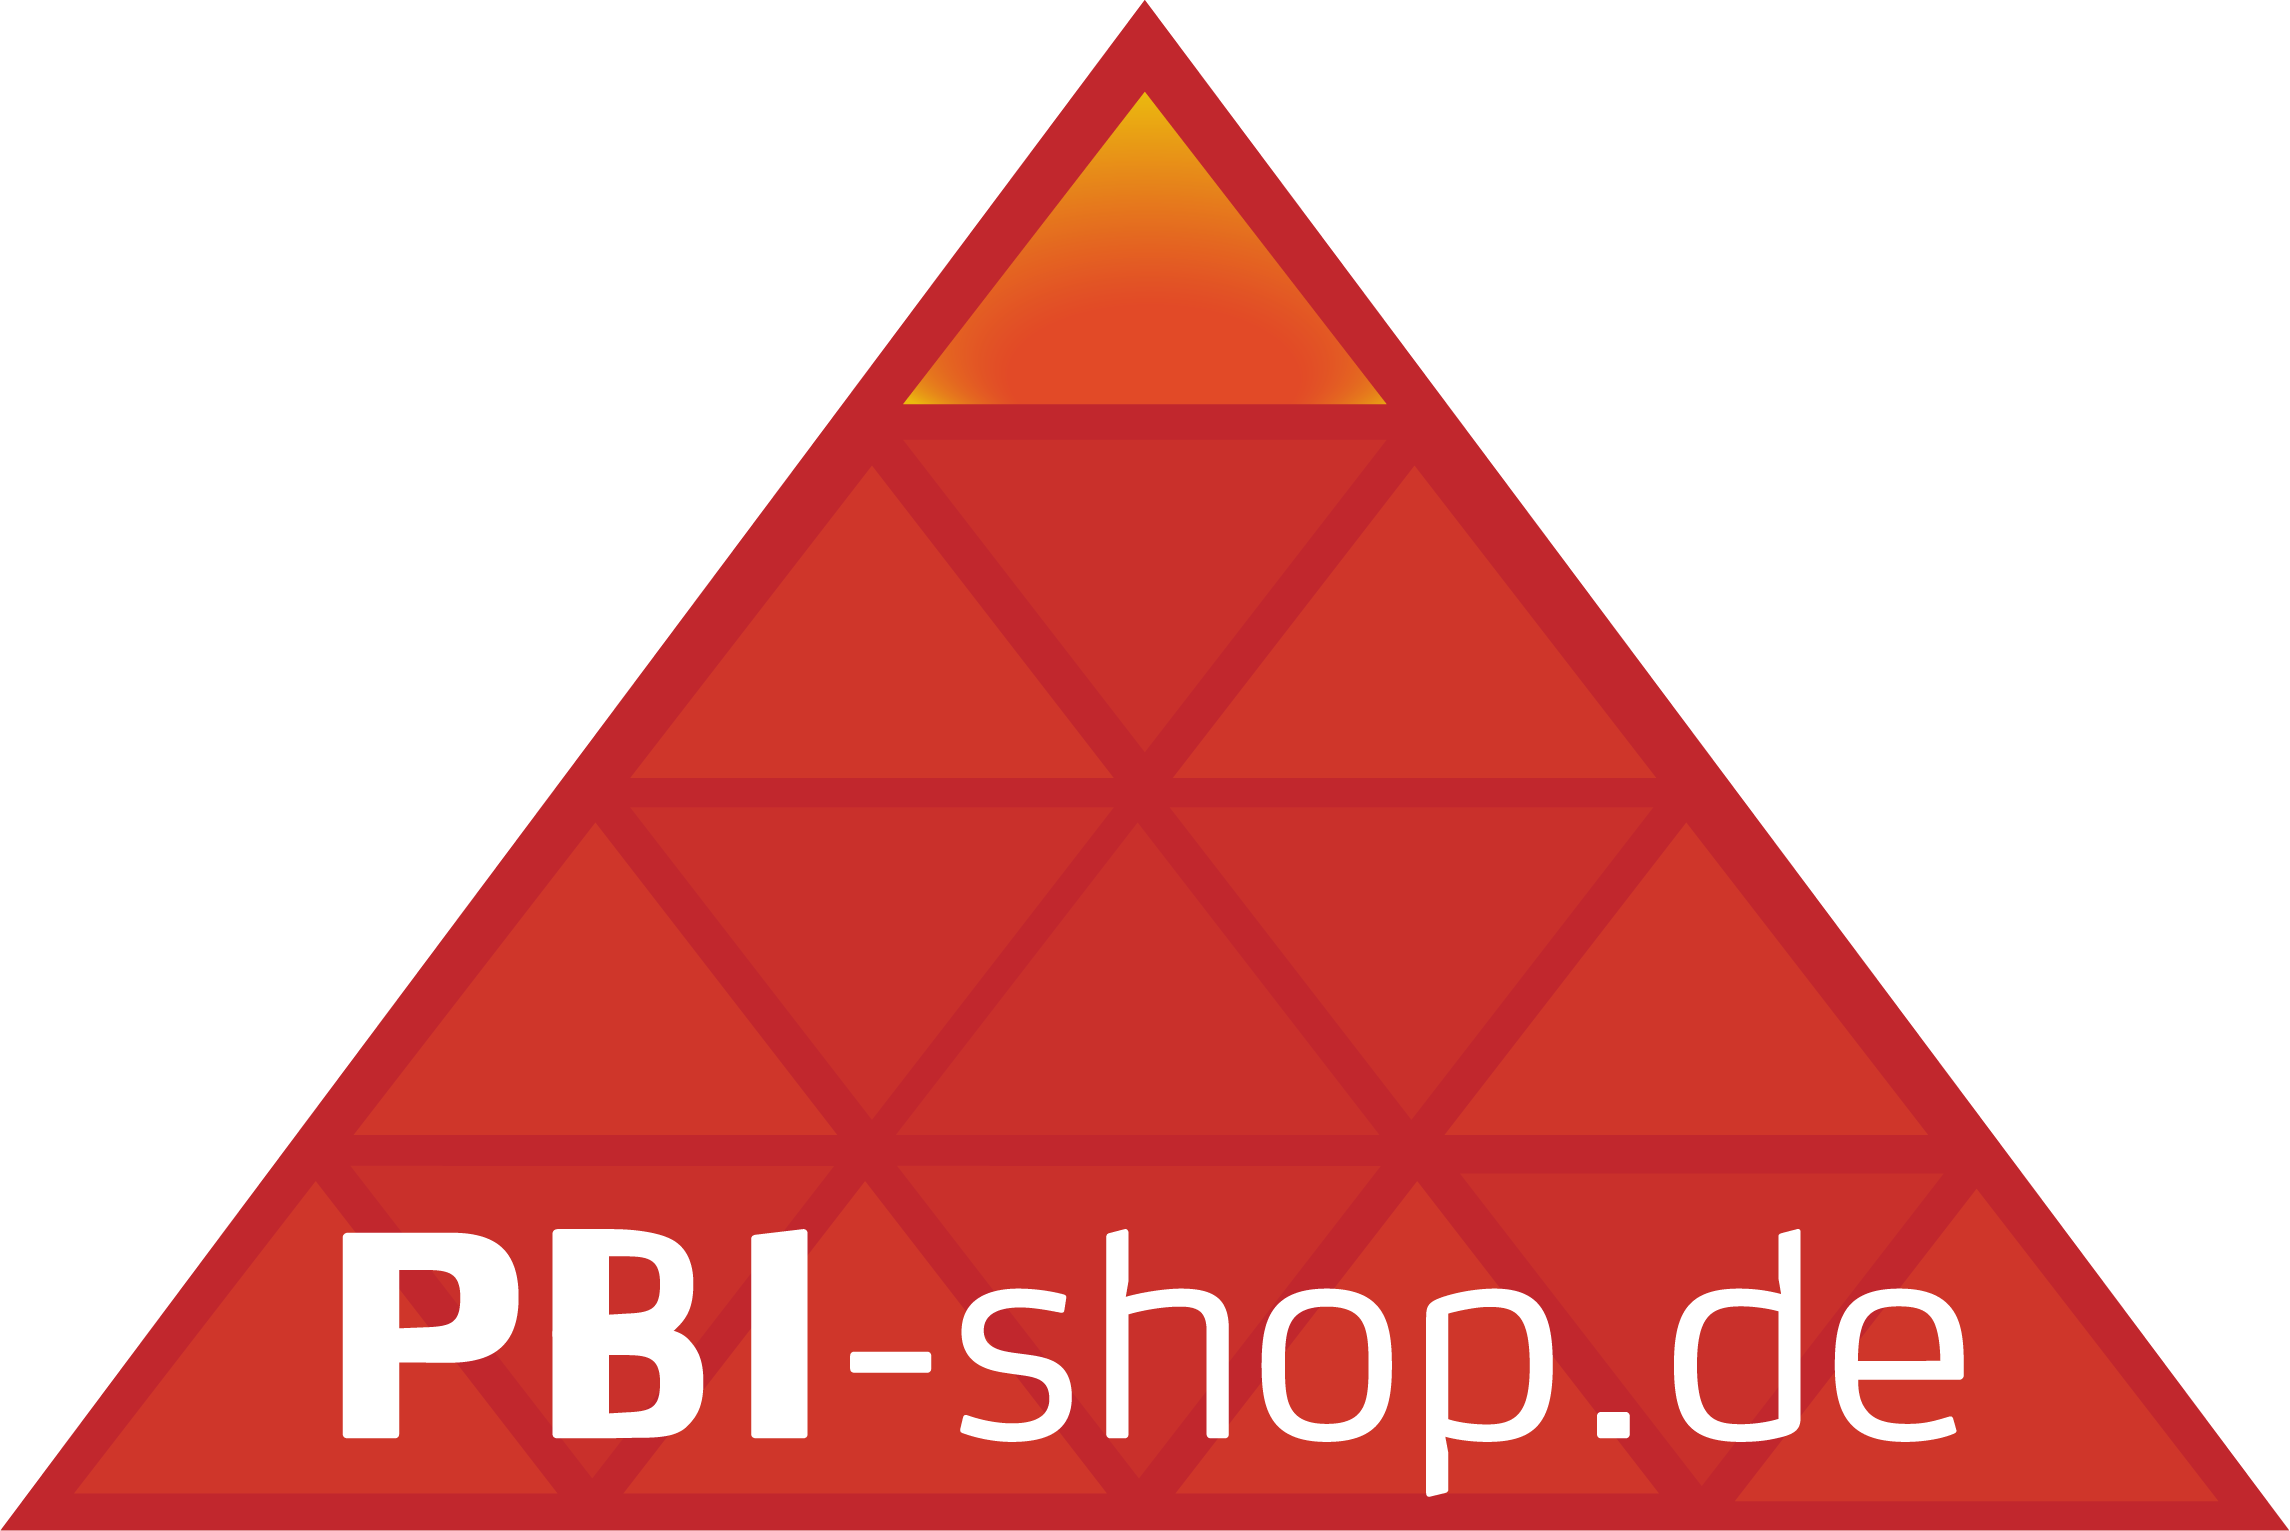 PBI-shop.de"